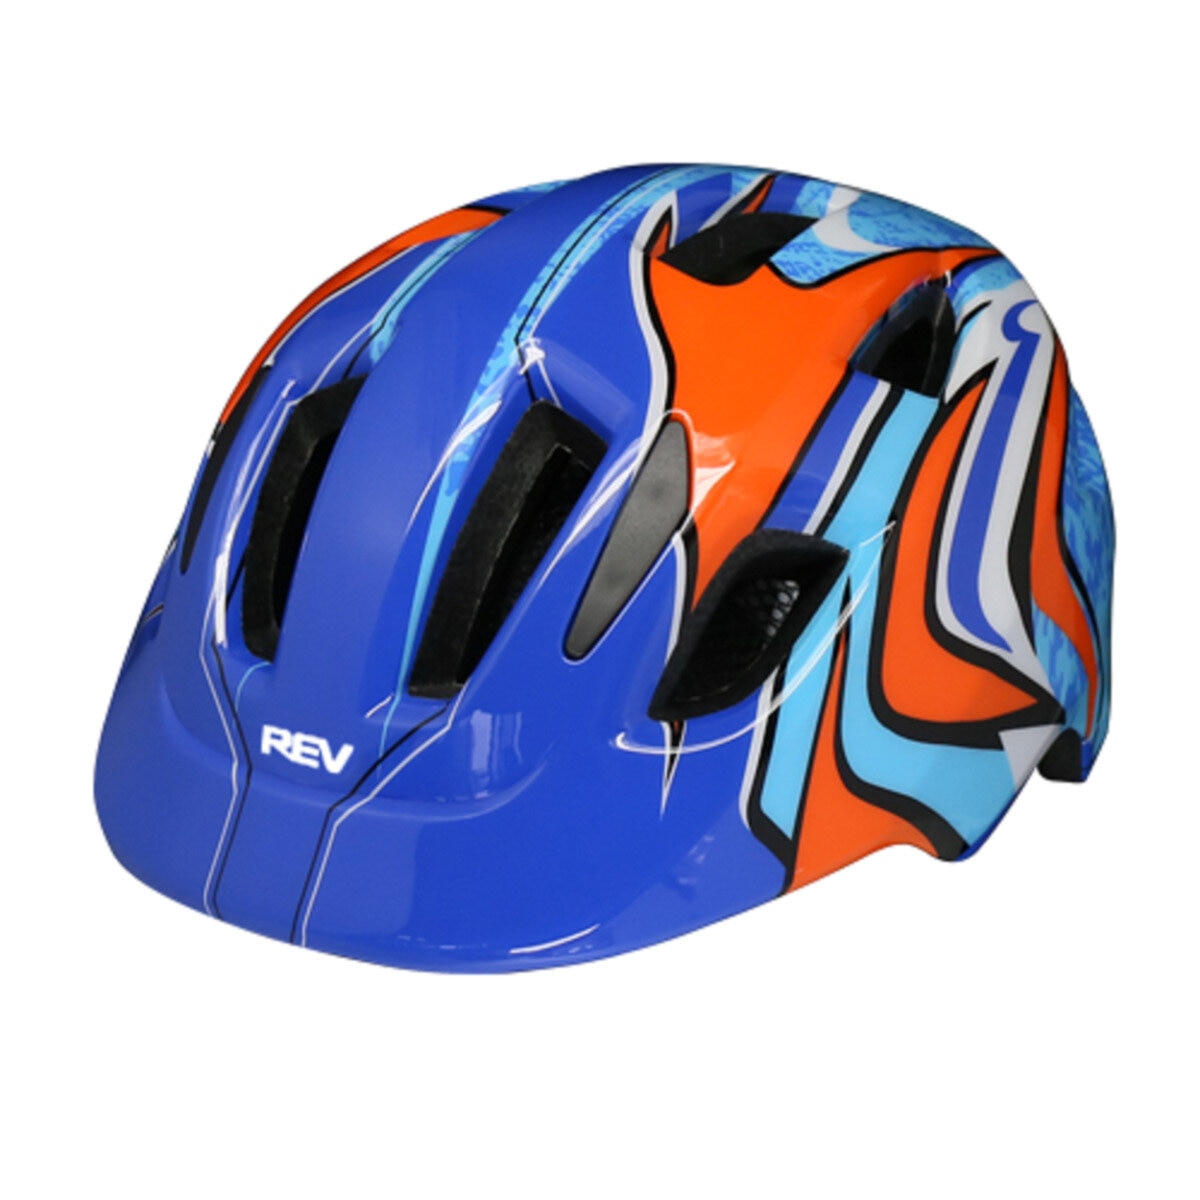 注文割引 大特価 セール202307REV SPORTS子供用自転車 インモールド 自転車用 軽量 ヘルメットキッズ ヘルメット  SG規格全4色cos-028118-4 ヘルメット